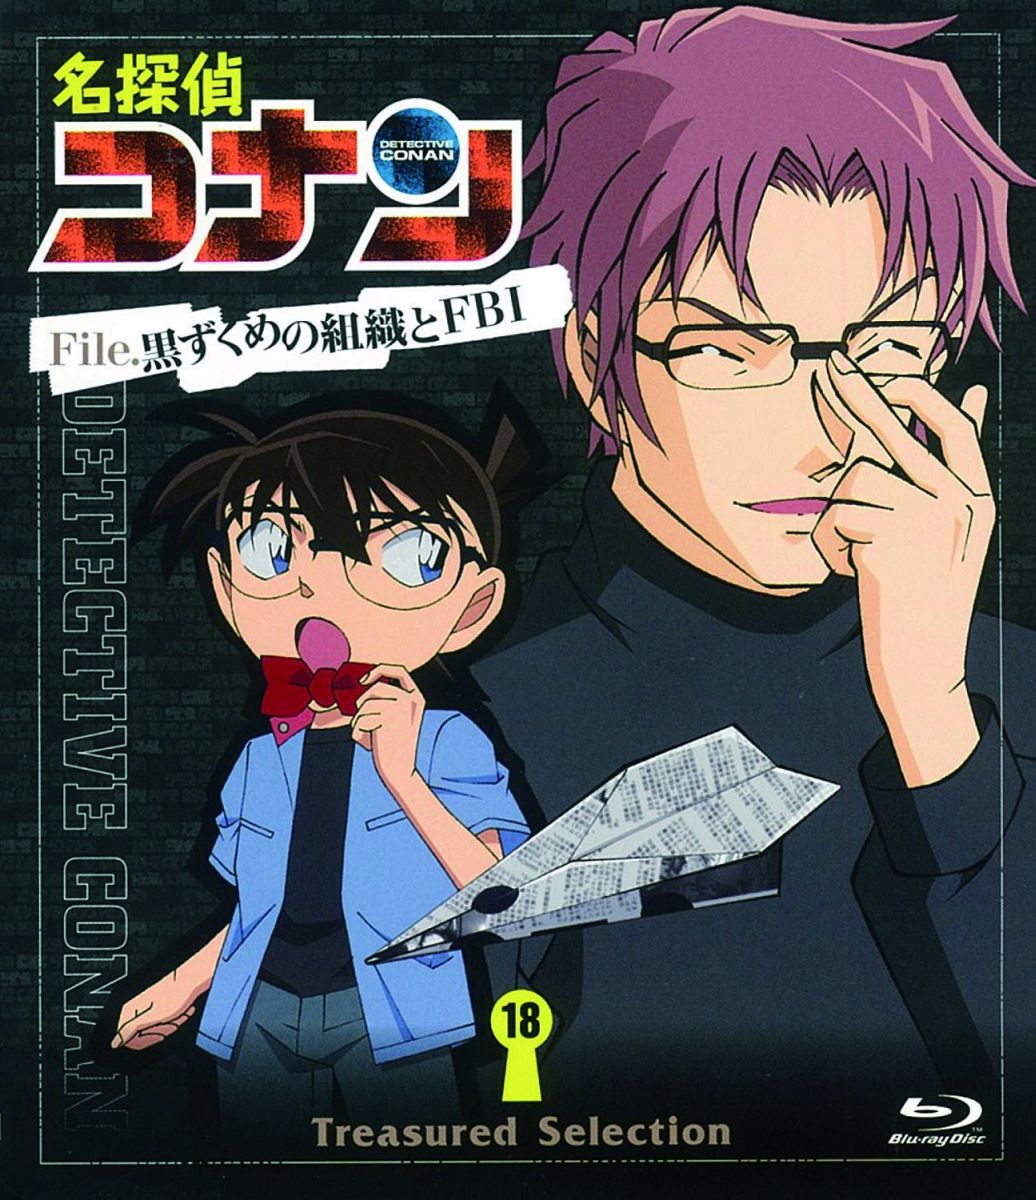 名探偵コナン Treasured Selection File.黒ずくめの組織とFBI 18【Blu-ray】